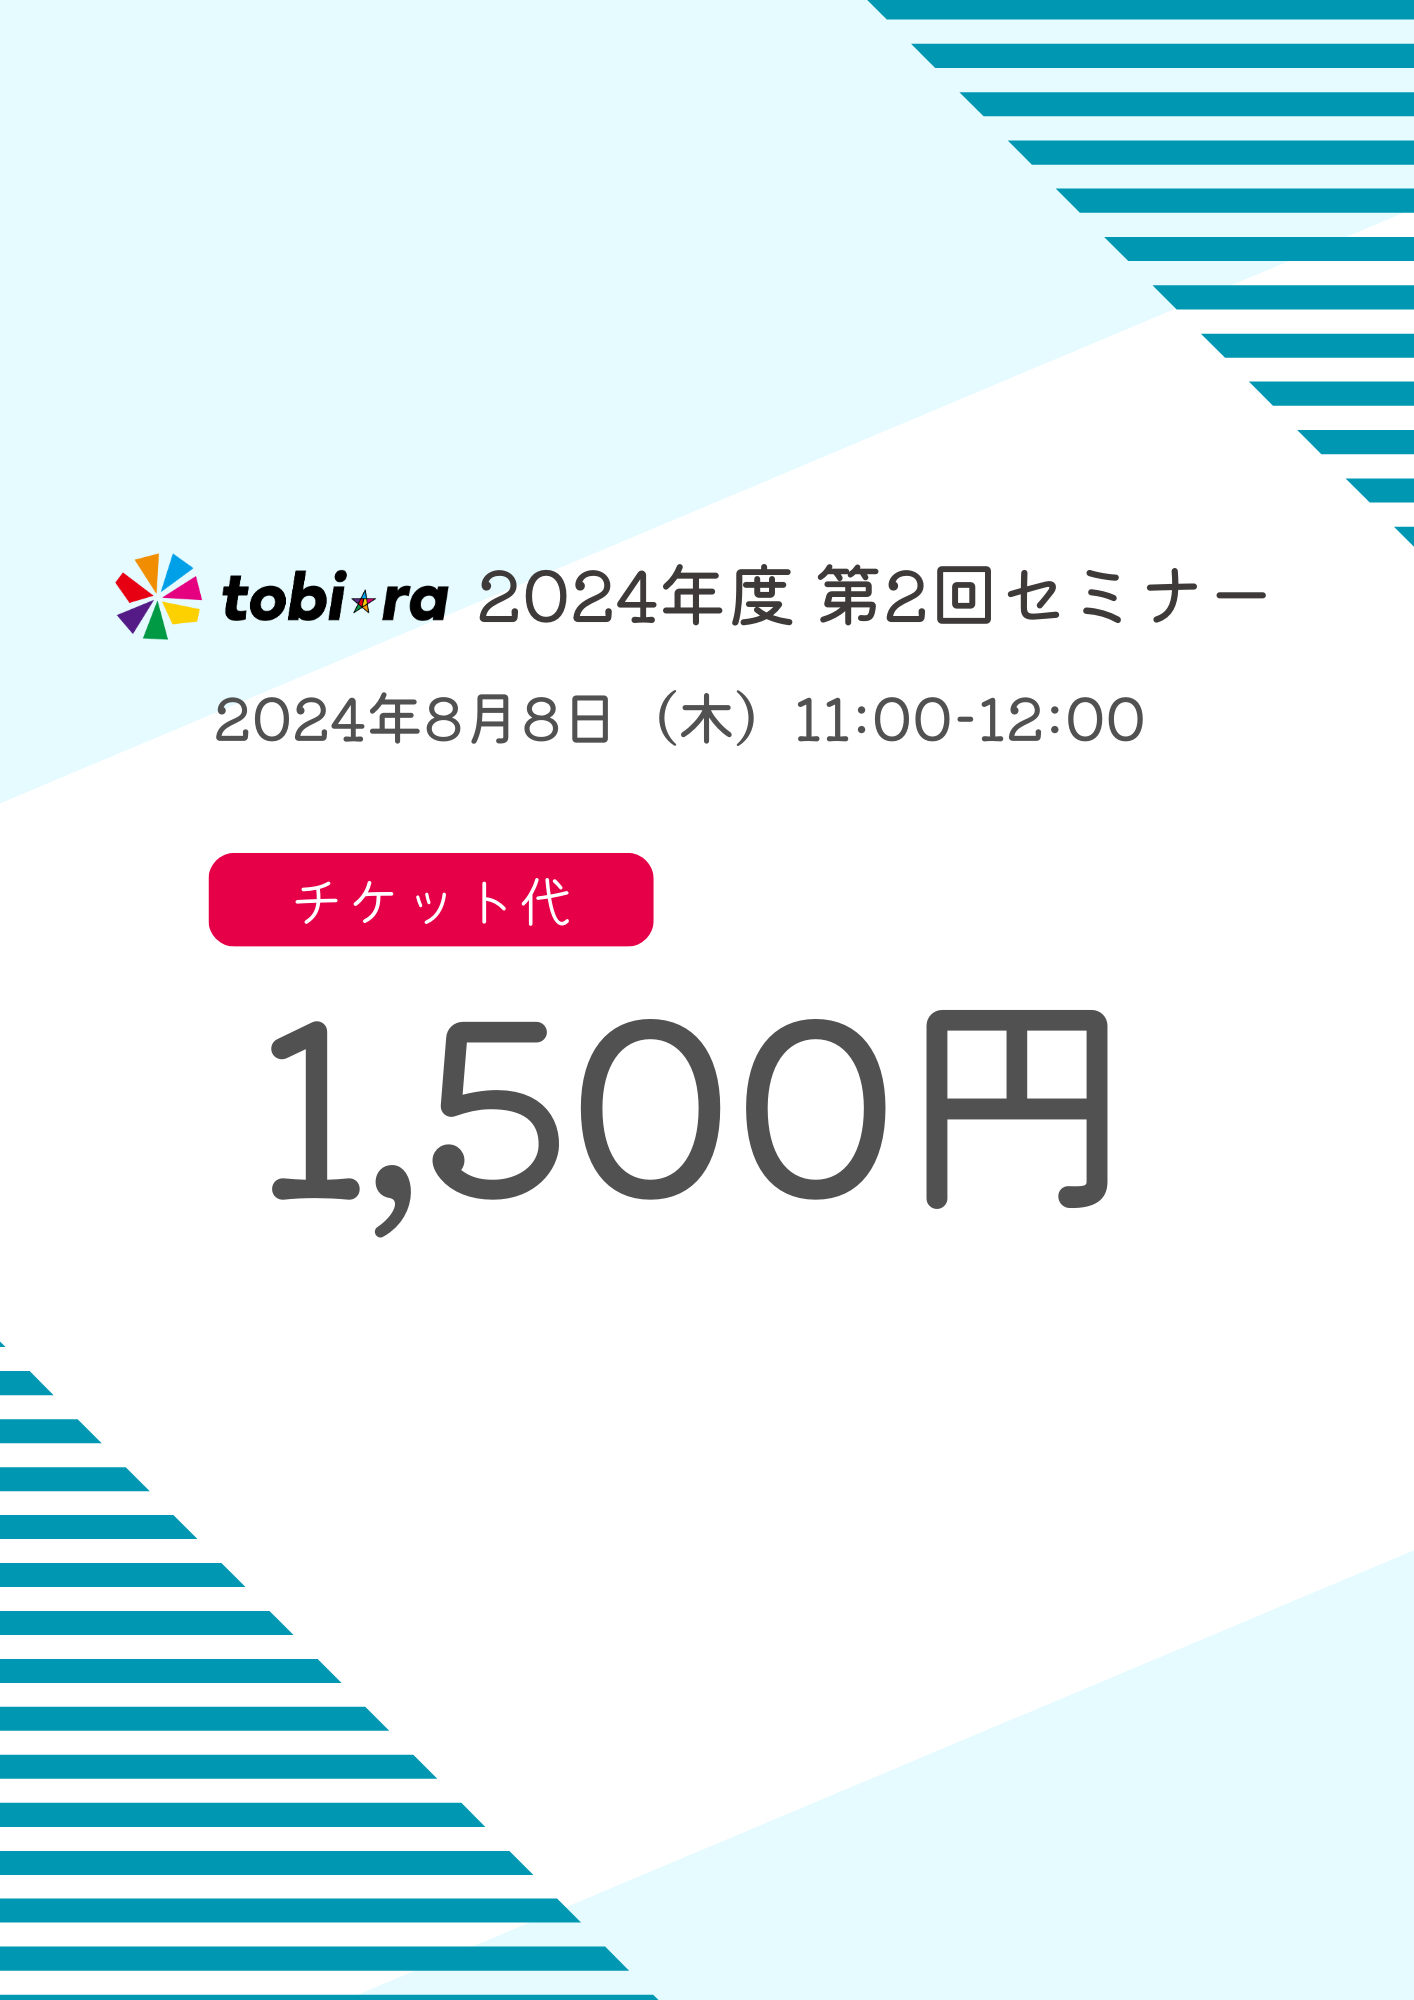 【2024年8月8日(木)】tobiraセミナー「身につけたい！ 自分でできるストレスケア～働き続けるために～」参加チケット